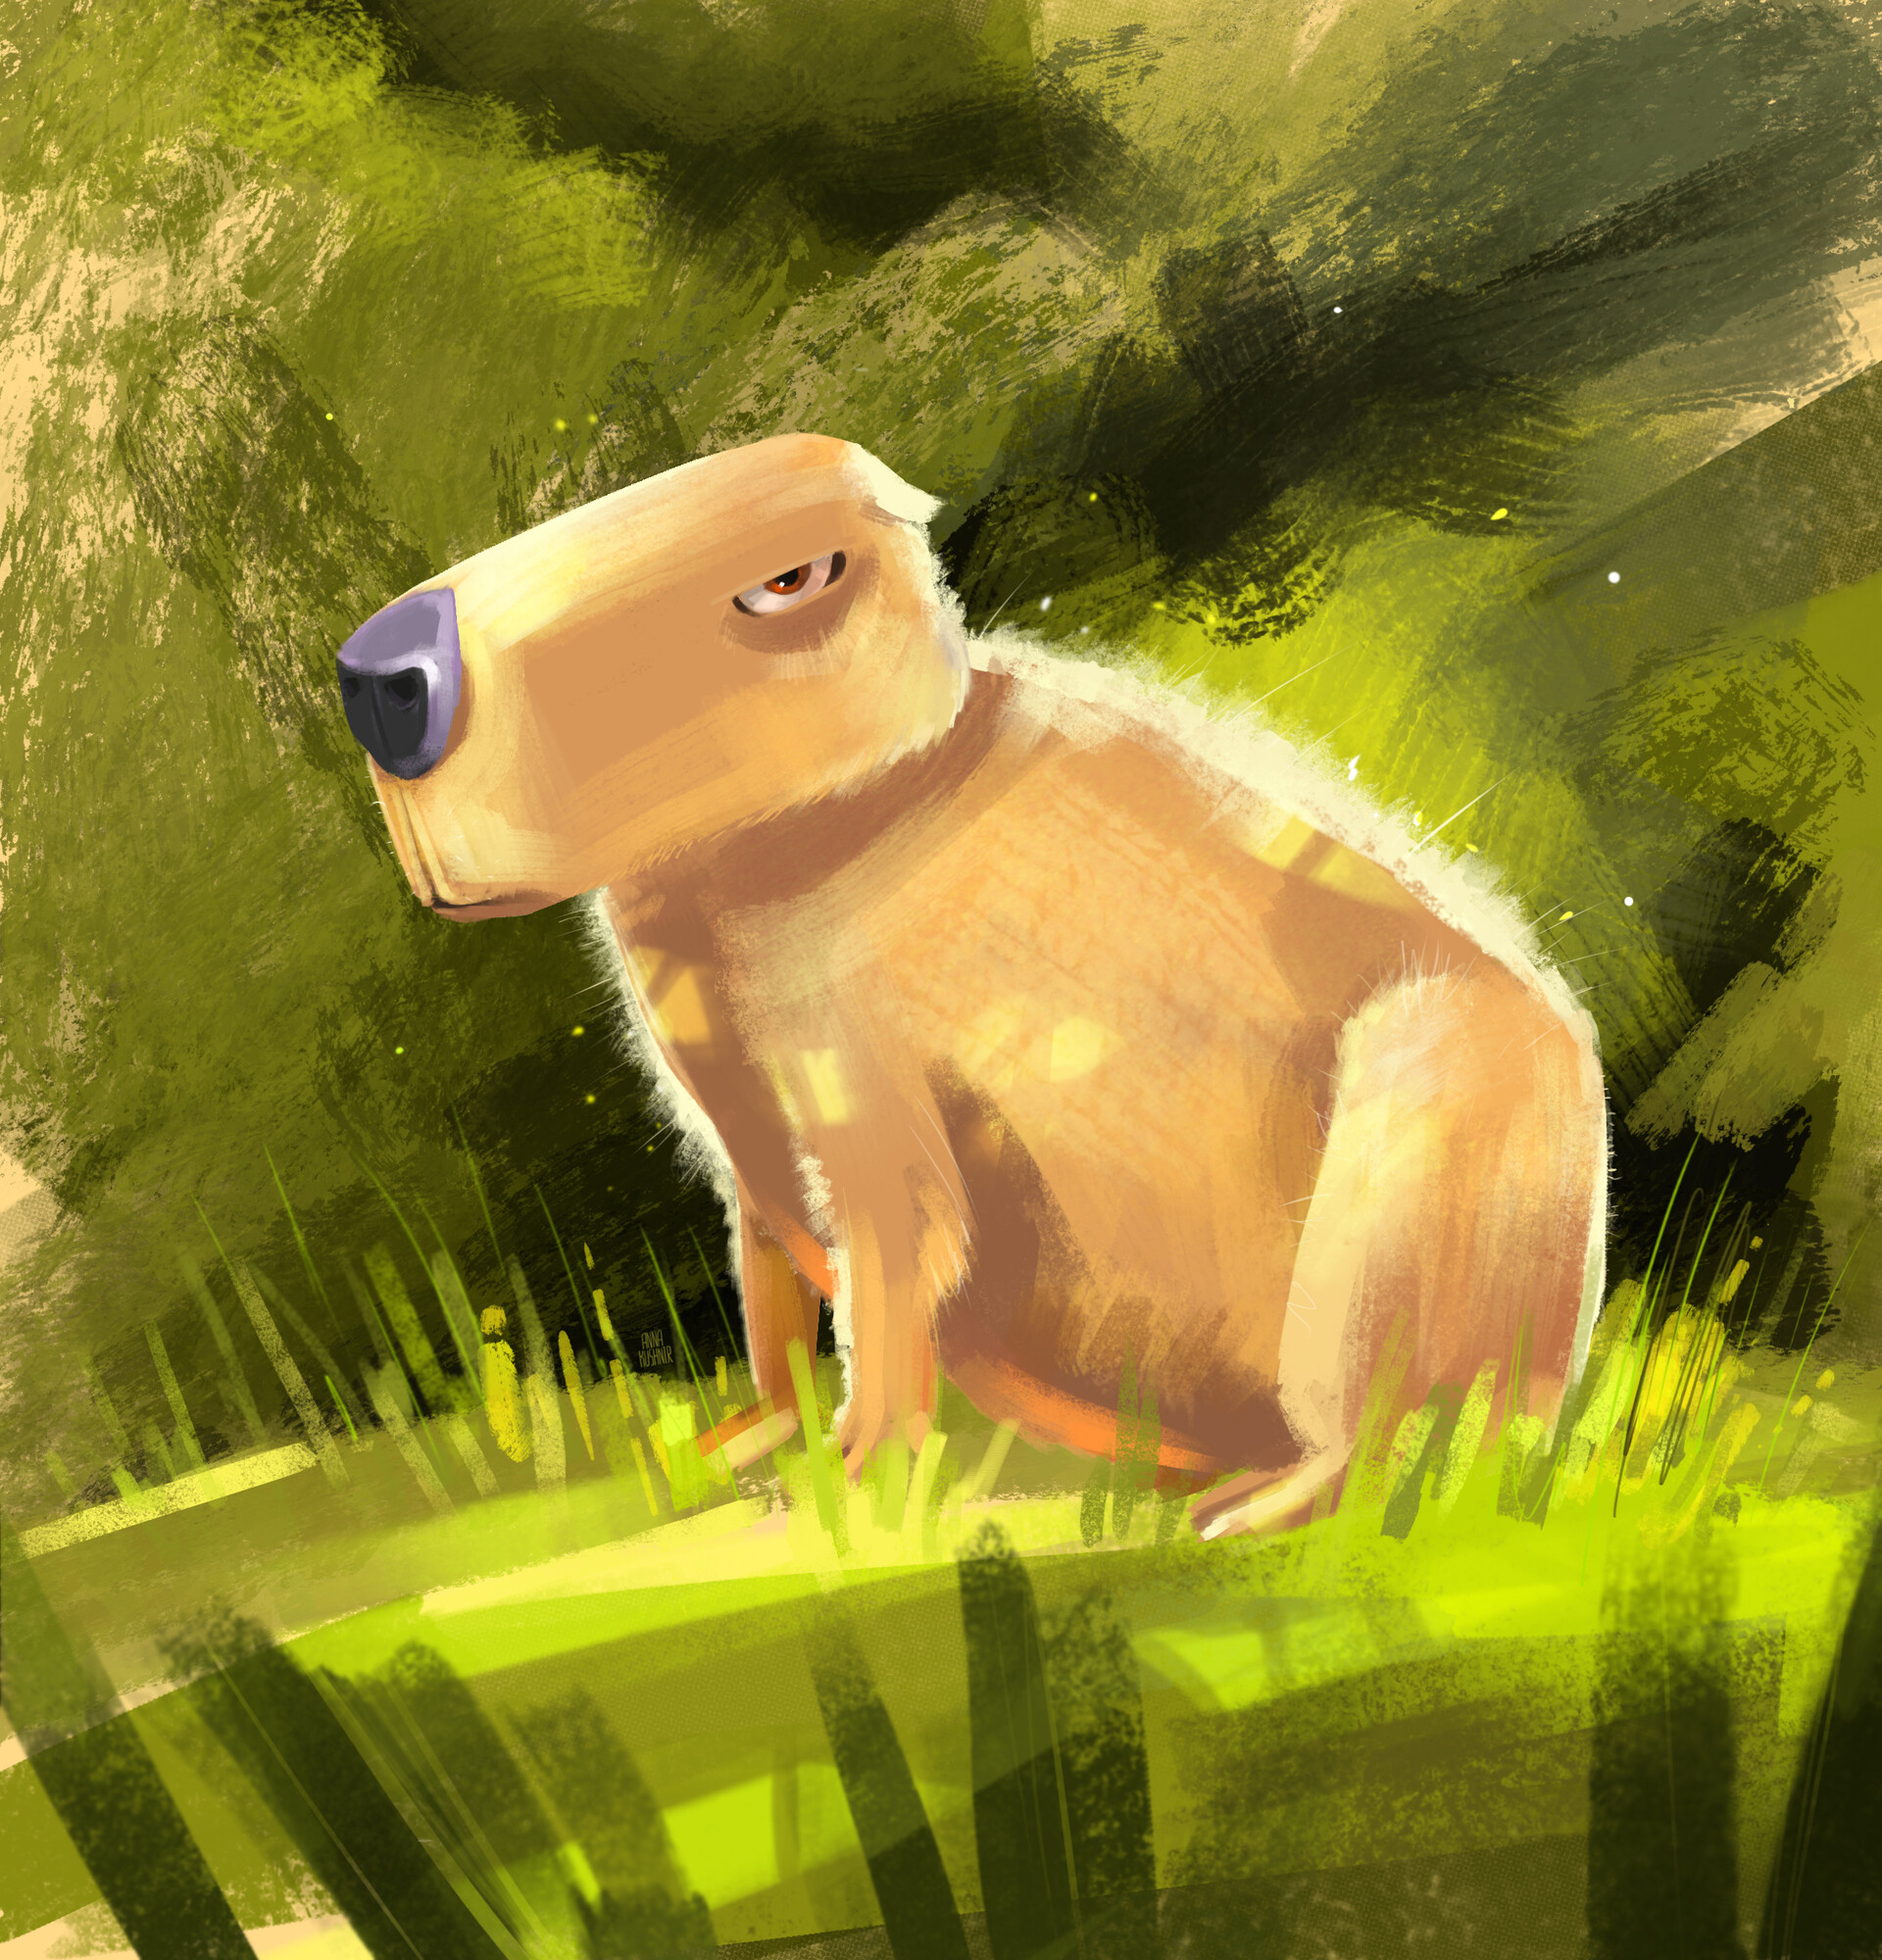 capybara #illustration #art #animals